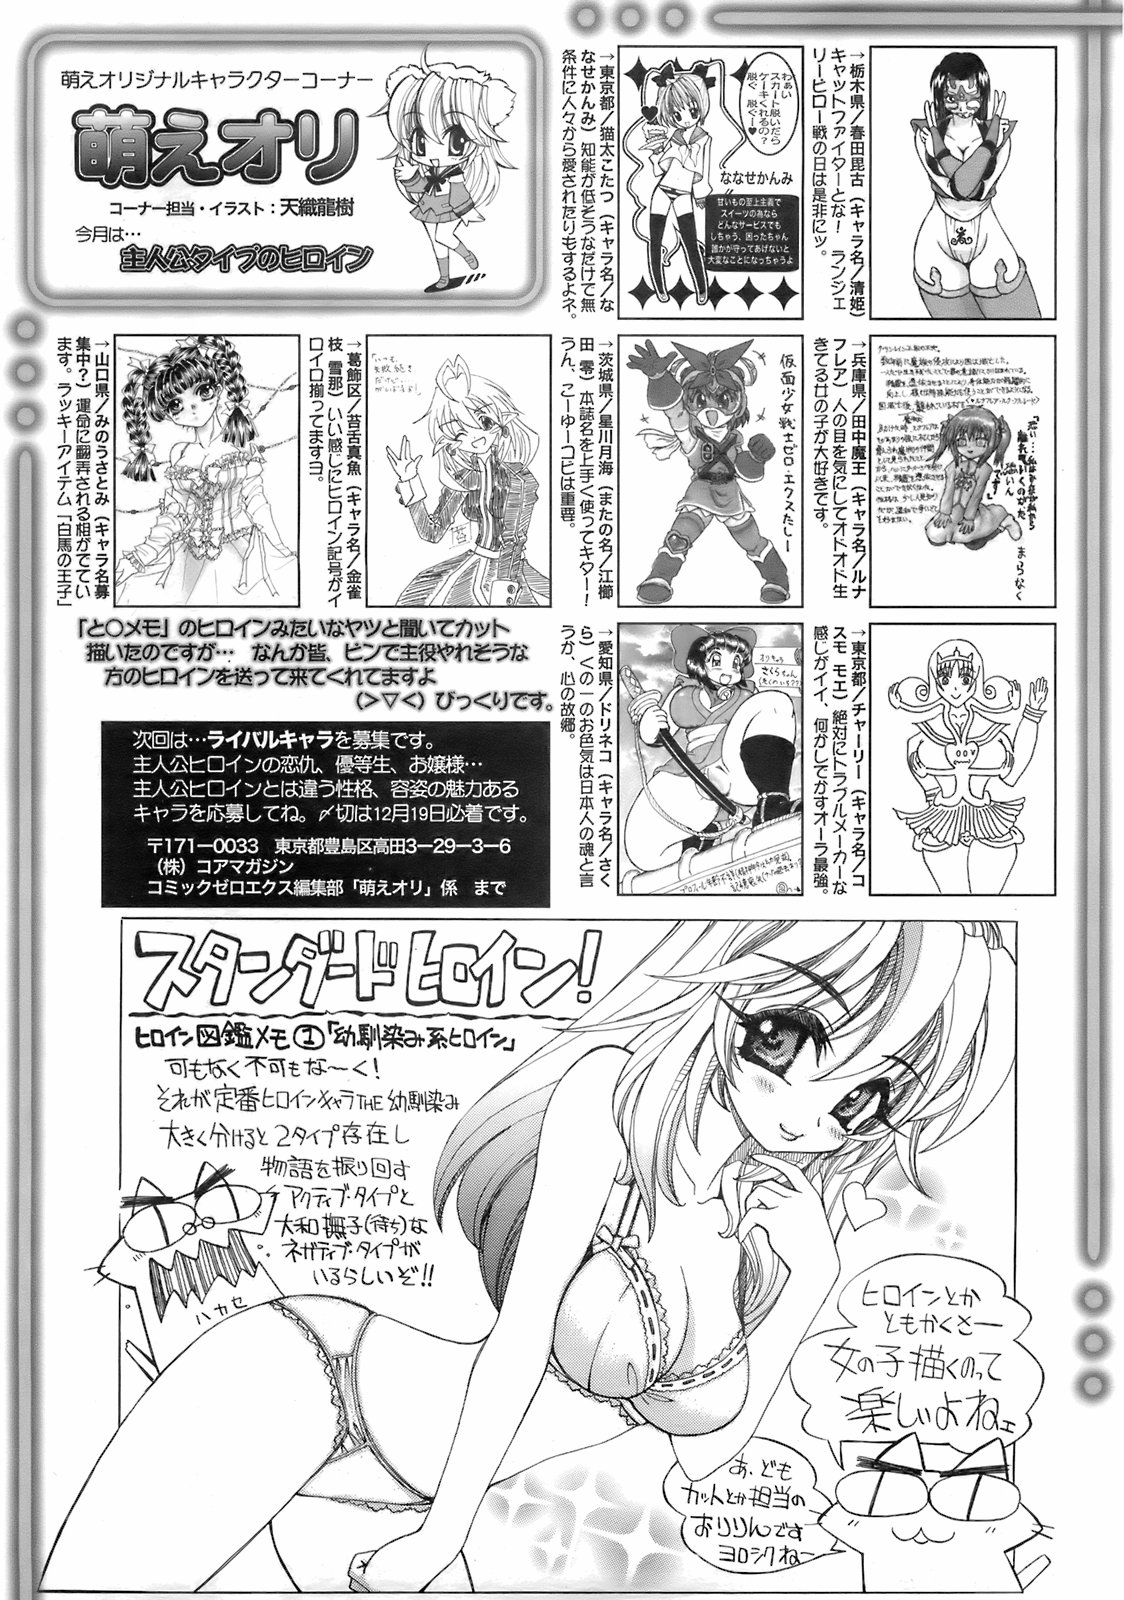 コミックゼロエクス Vol.01 2008年1月号